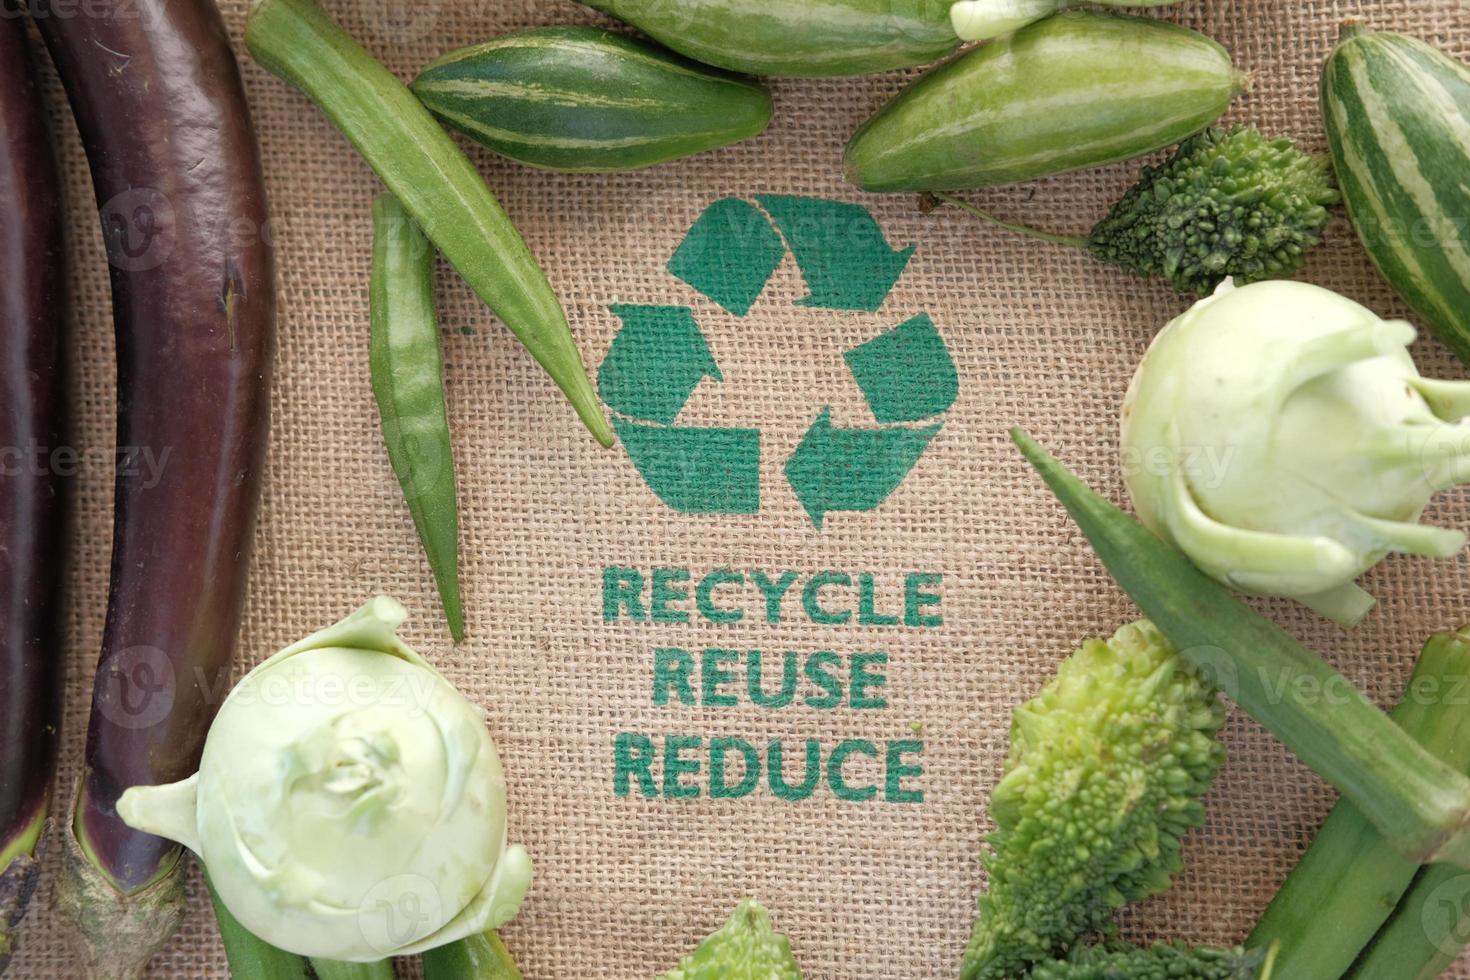 concepto de reciclaje con verduras foto